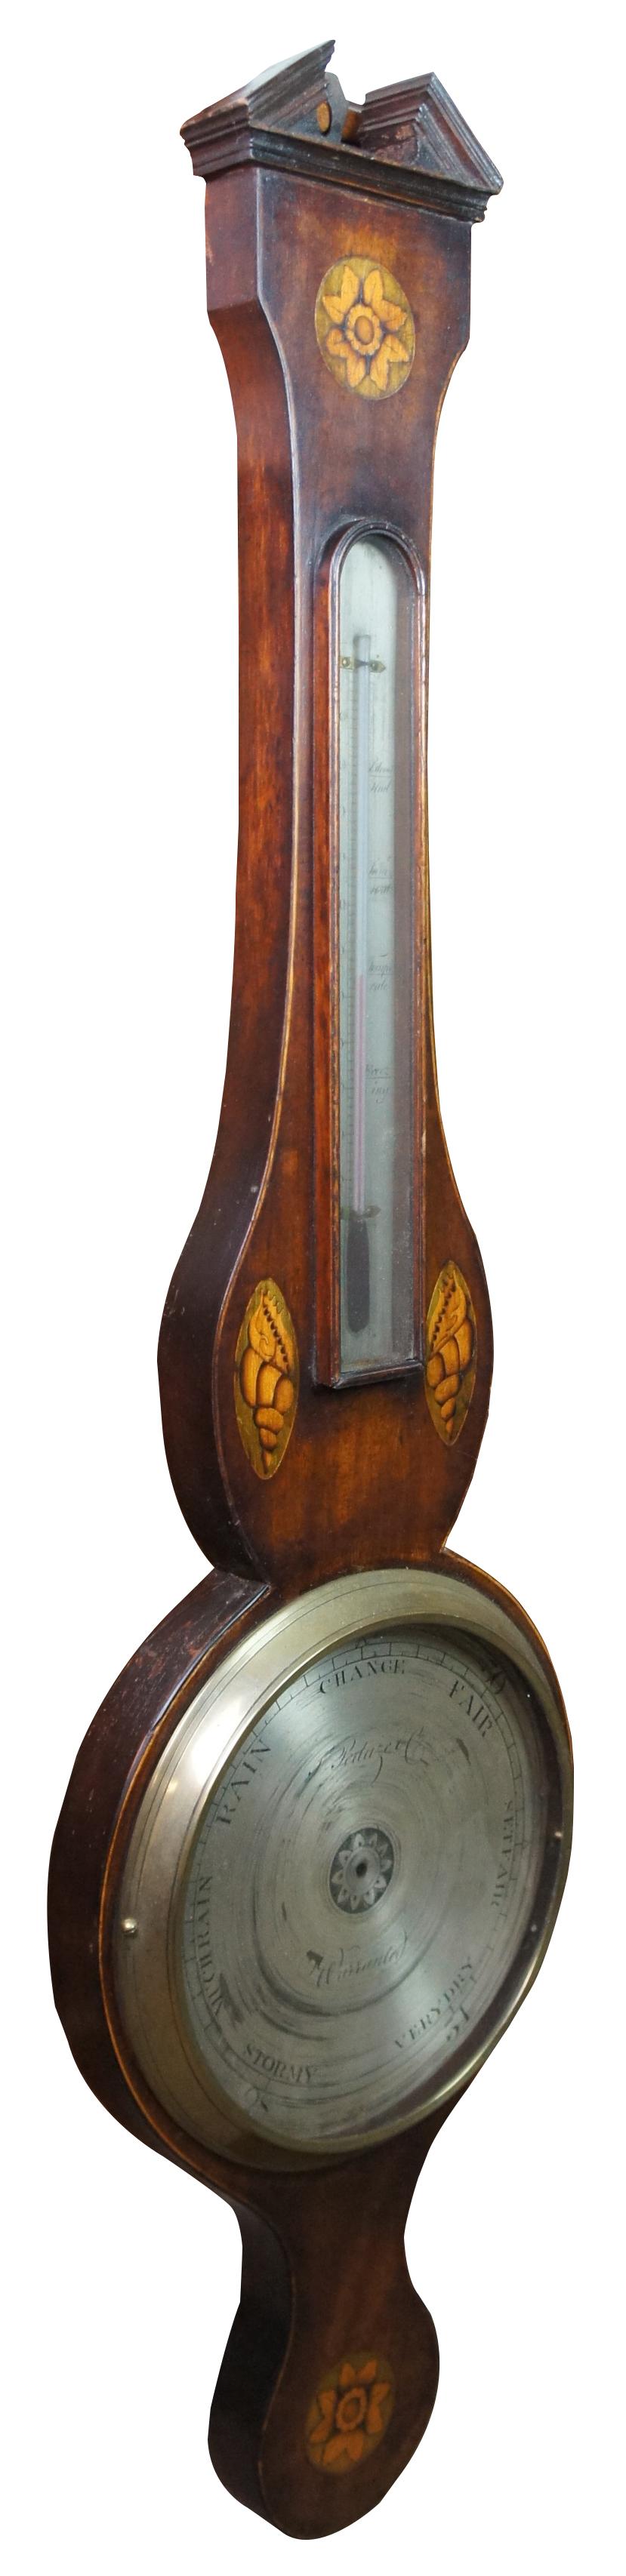 Ancien baromètre anglais George III en bois fruitier de forme banjo avec fronton ouvert et motif floral et coquillage en bois satiné. Fabriqué par F. Peduze Co. Vers les années 1780-1820. Mesures : 38